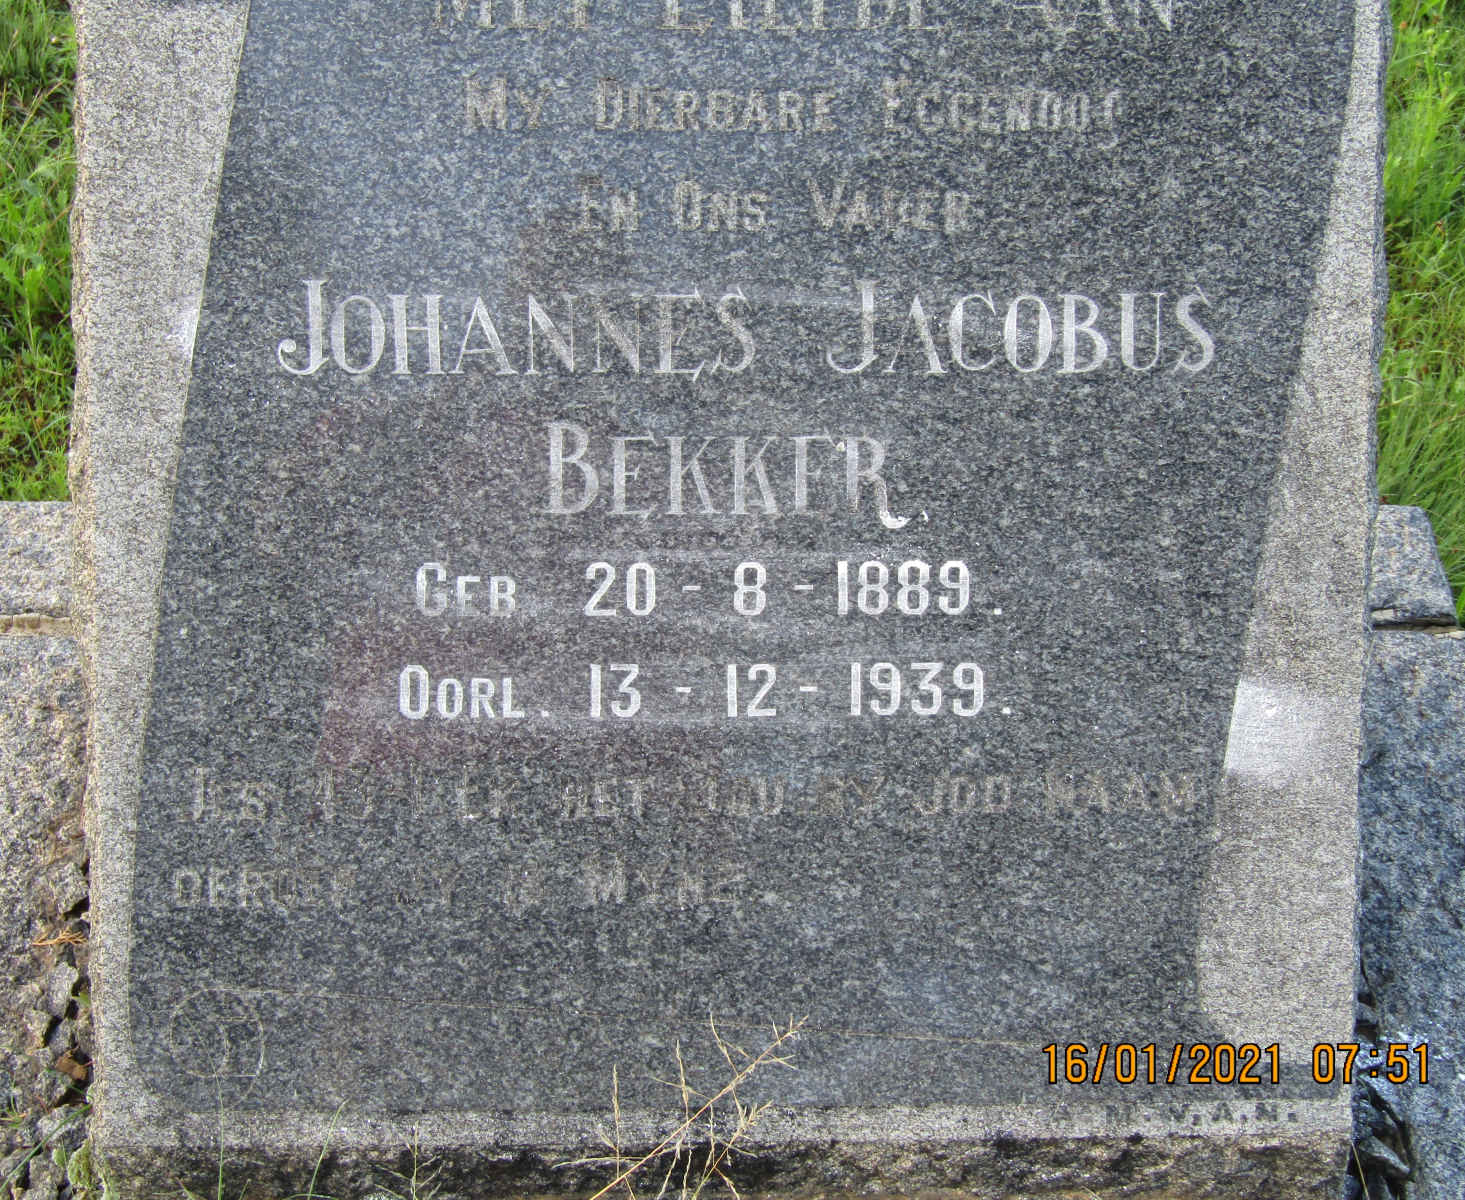 BEKKER Johannes Jacobus 1889-1939